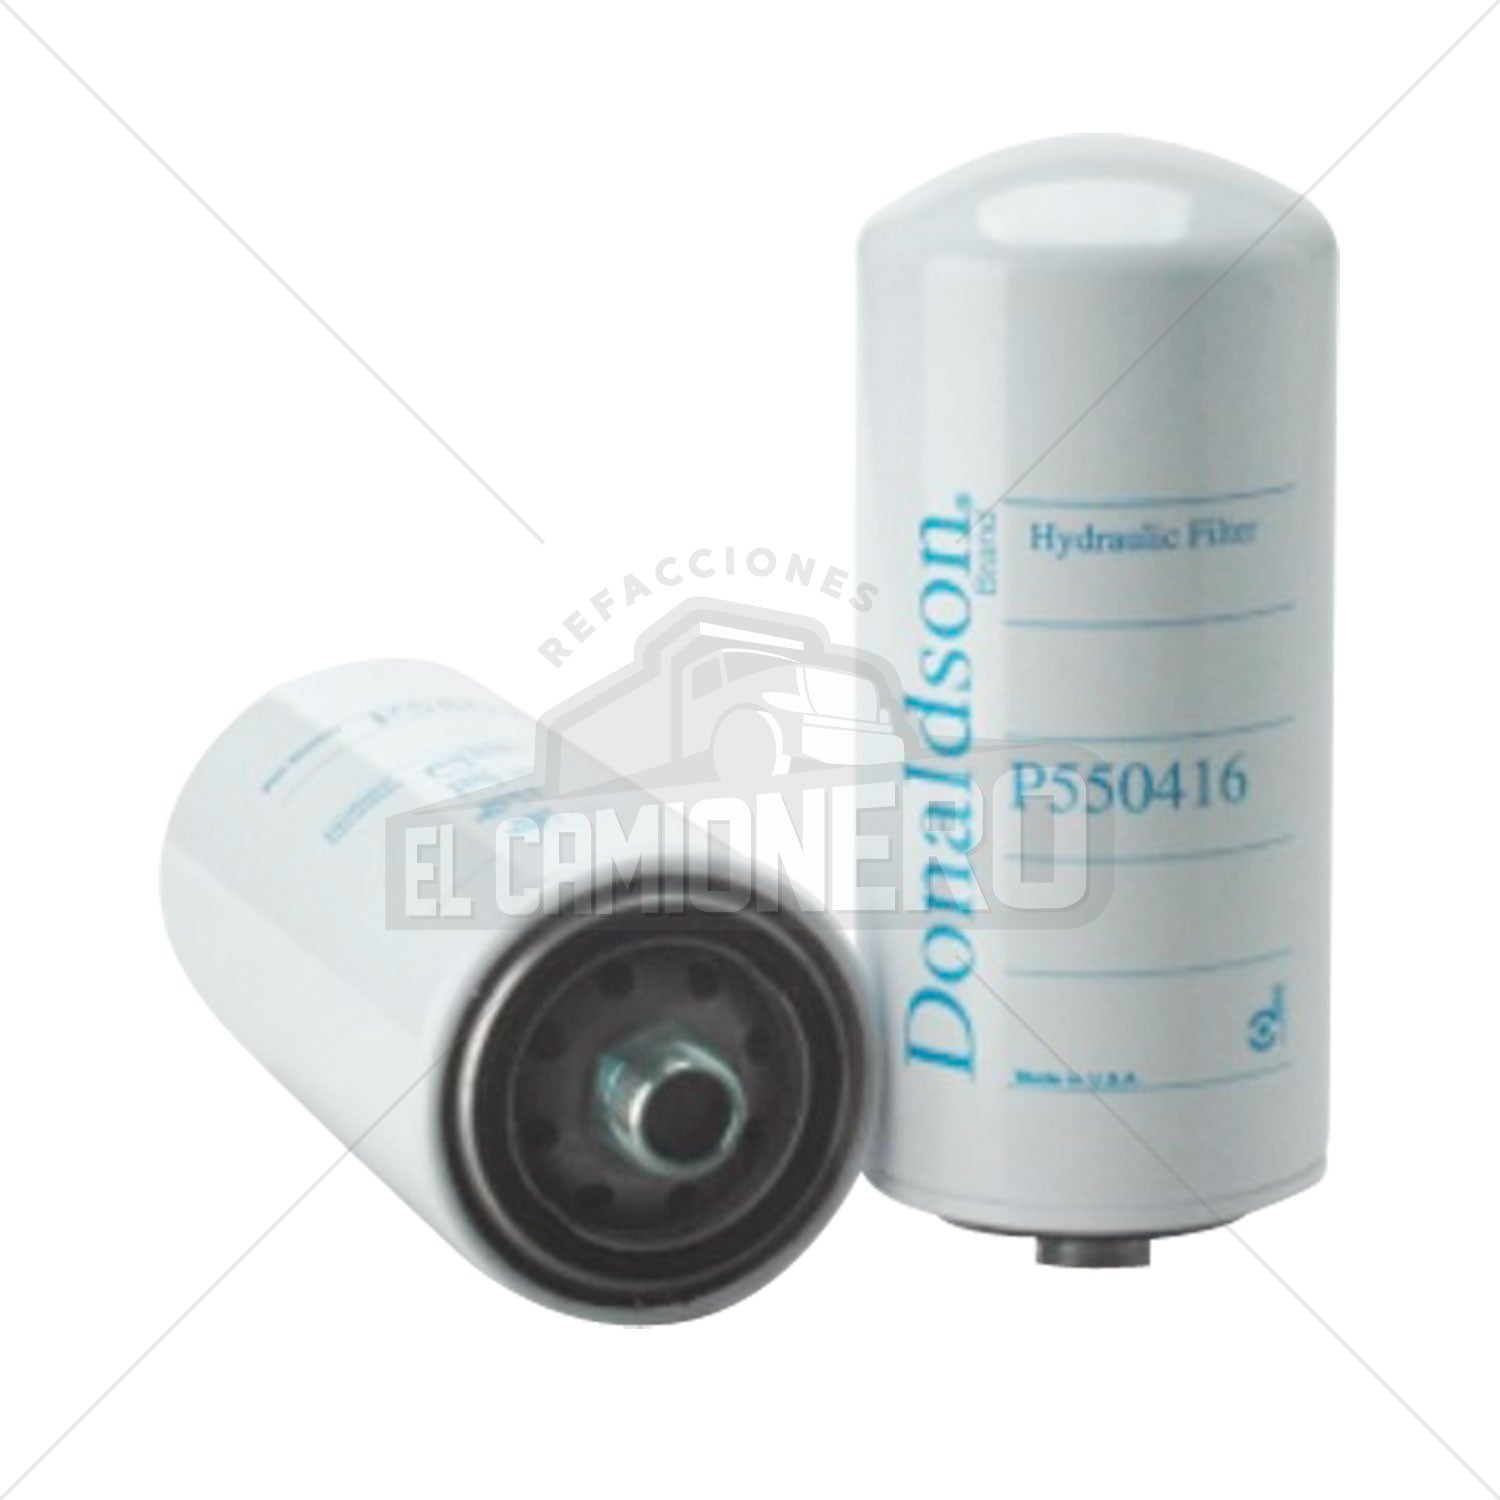 Filtro hidráulico Donaldson P550416